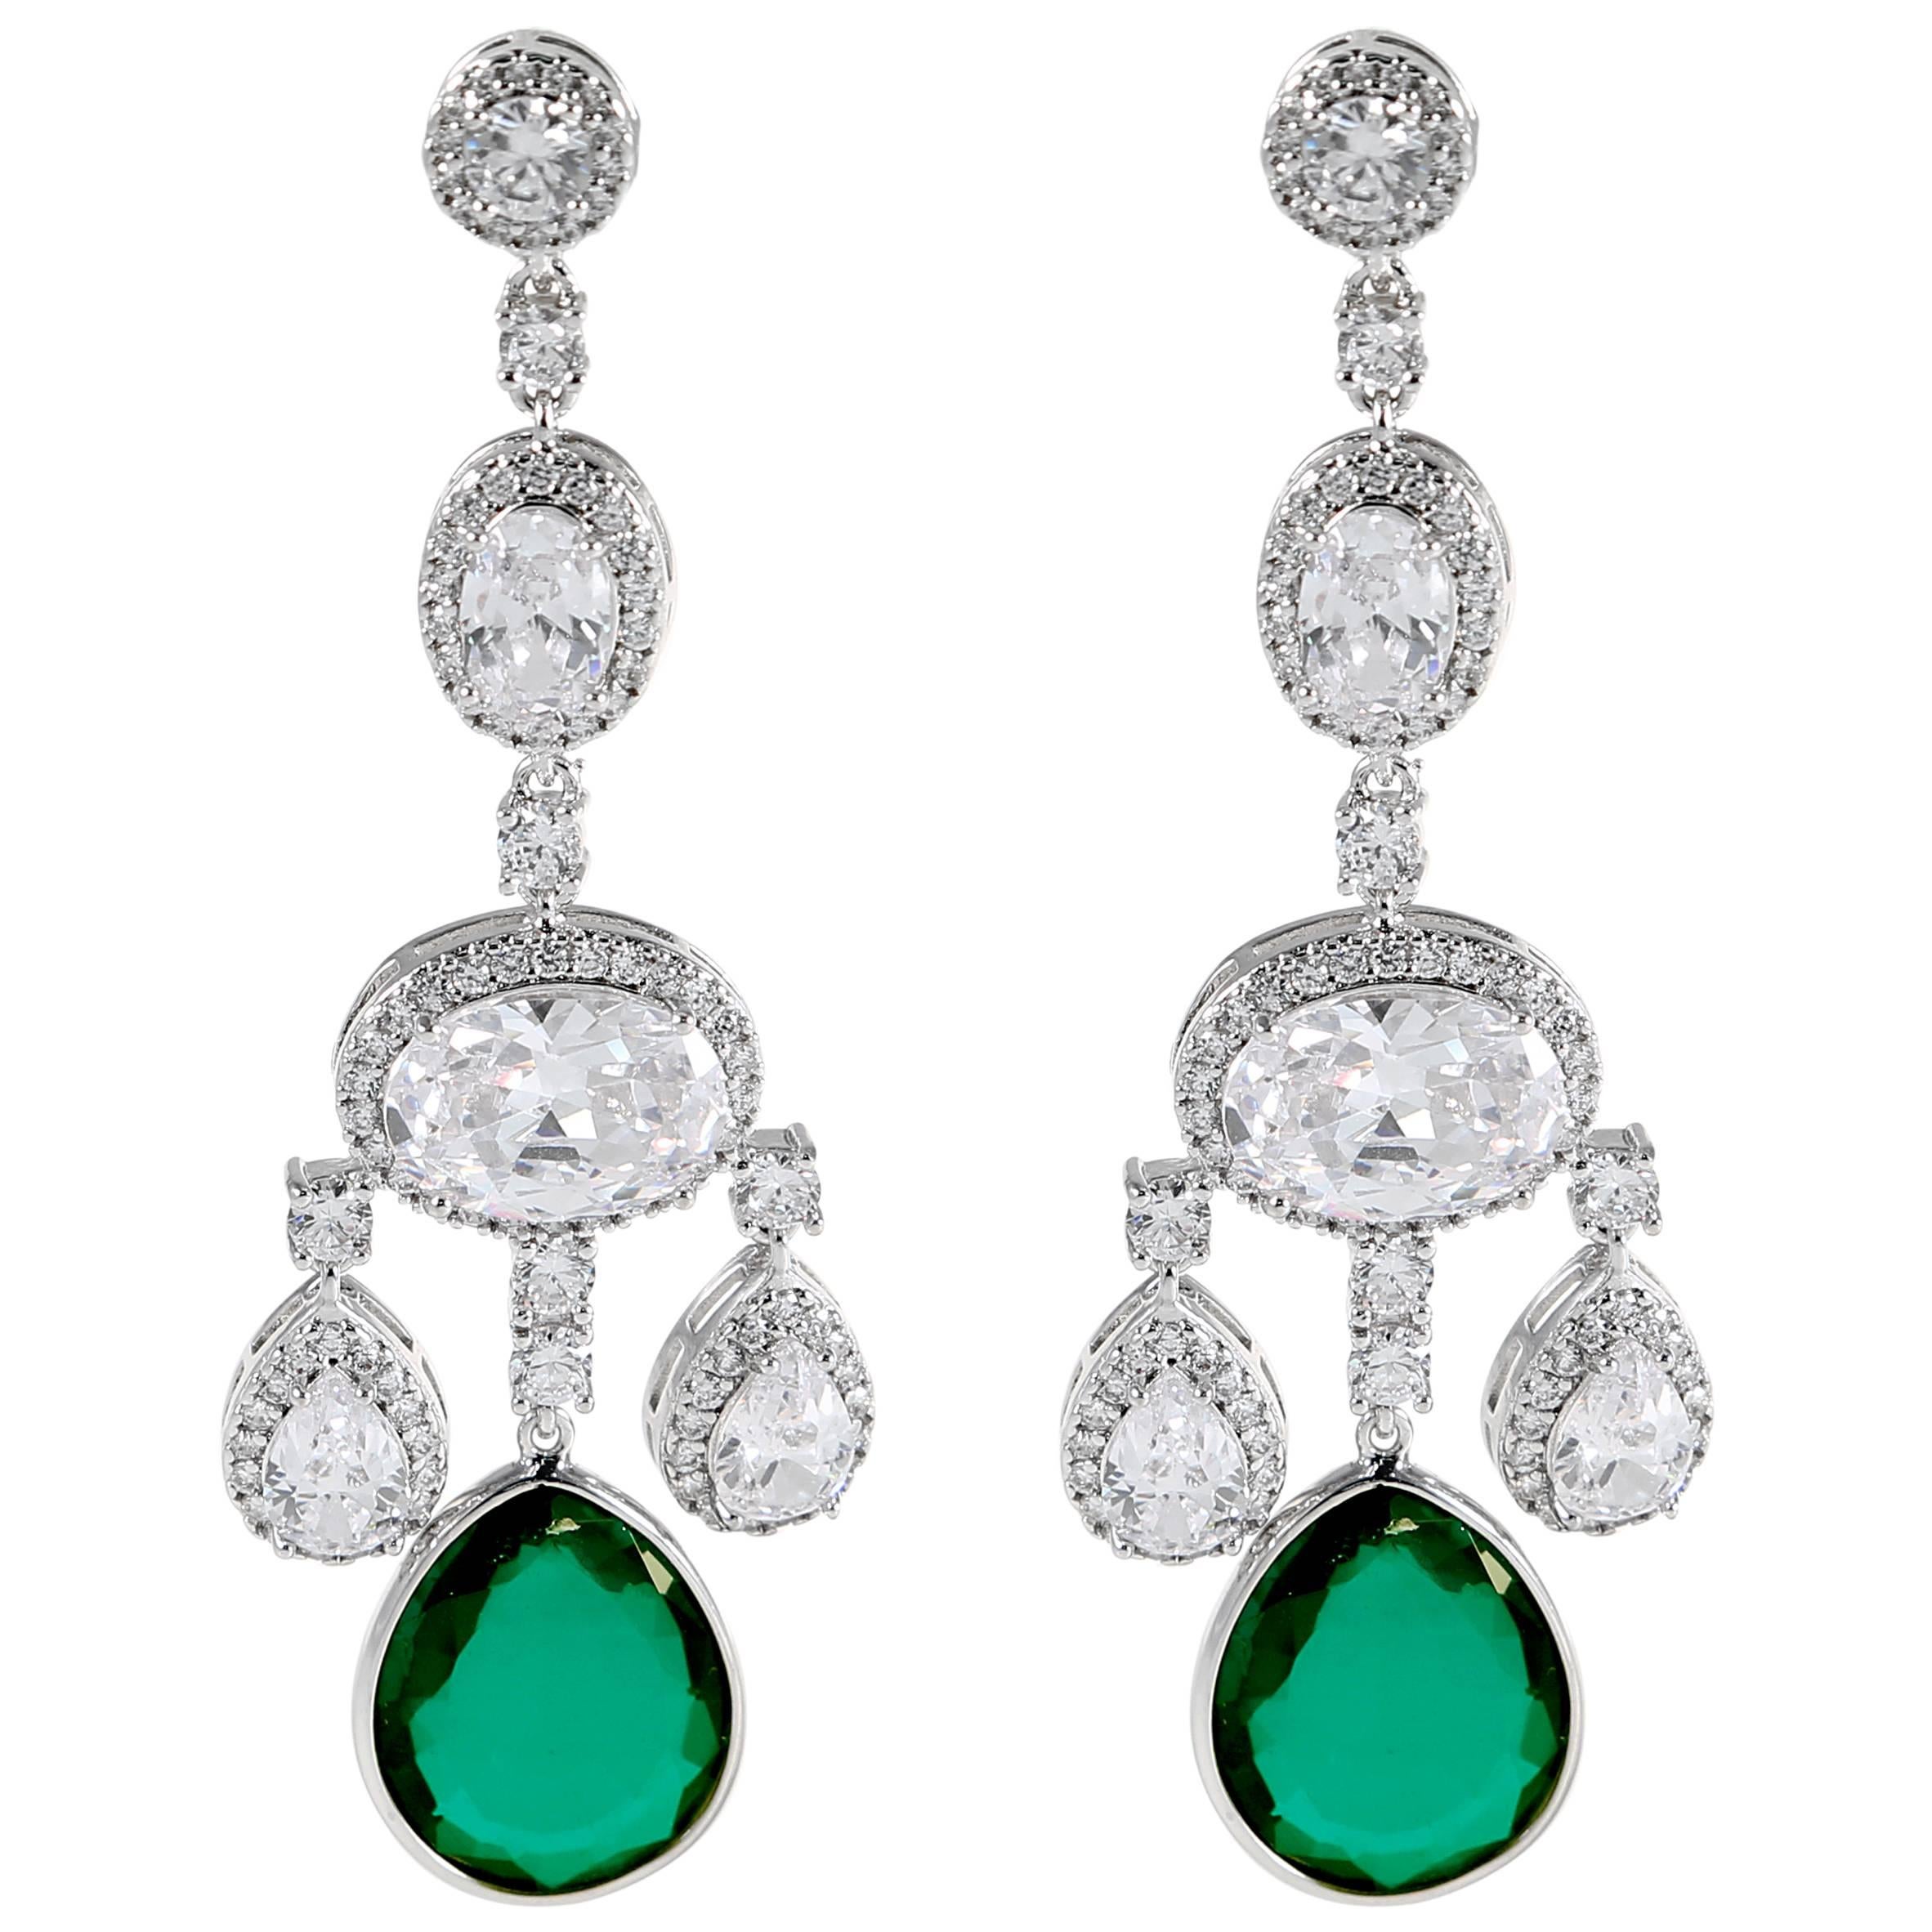 On Sale!! Cubic Zirconia Faux Emerald Girandole Chandelier Earring